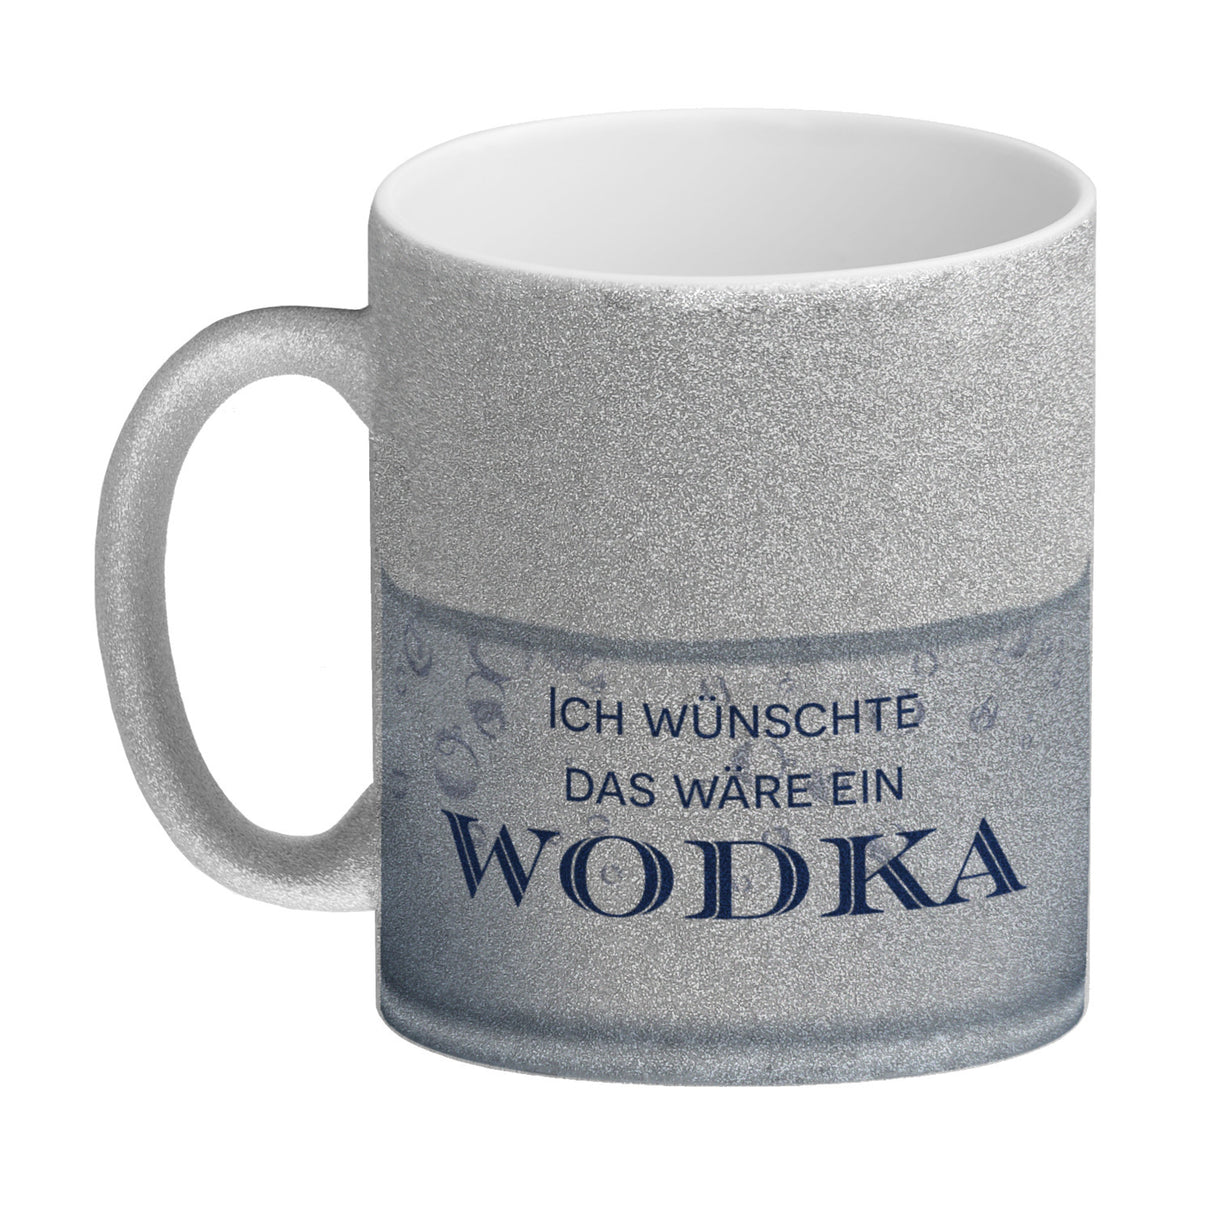 Ich wünschte das wäre ein Wodka Kaffeebecher